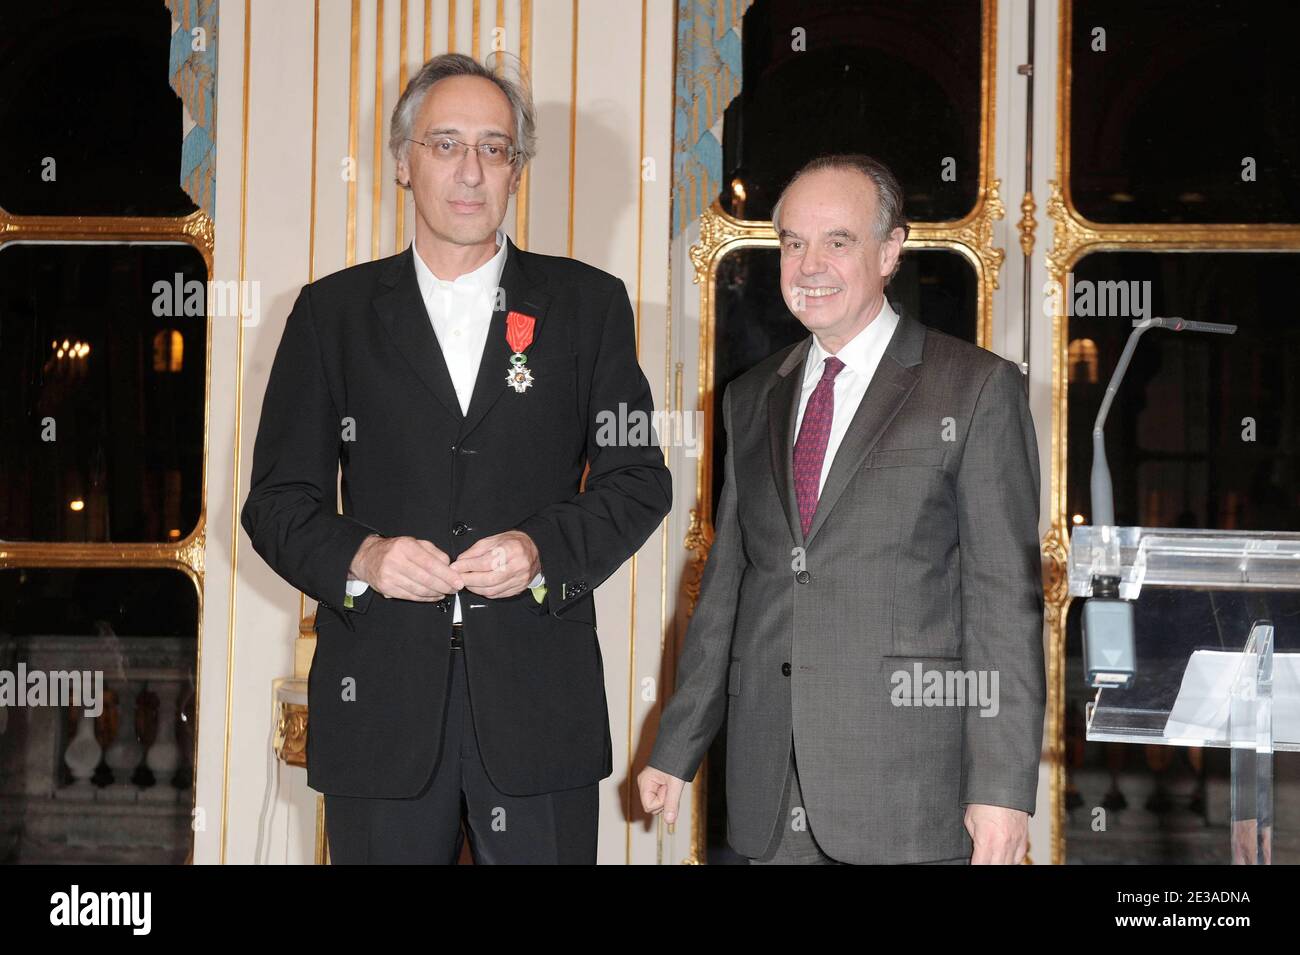 Marc Mimram reçoit la médaille Chevalier dans l'ordre de la Légion d'Honneur lors d'une cérémonie au ministre de la Culture à Paris, France, le 22 novembre 2010. Photo de Giancarlo Gorassini/ABACAPRESS.COM Banque D'Images